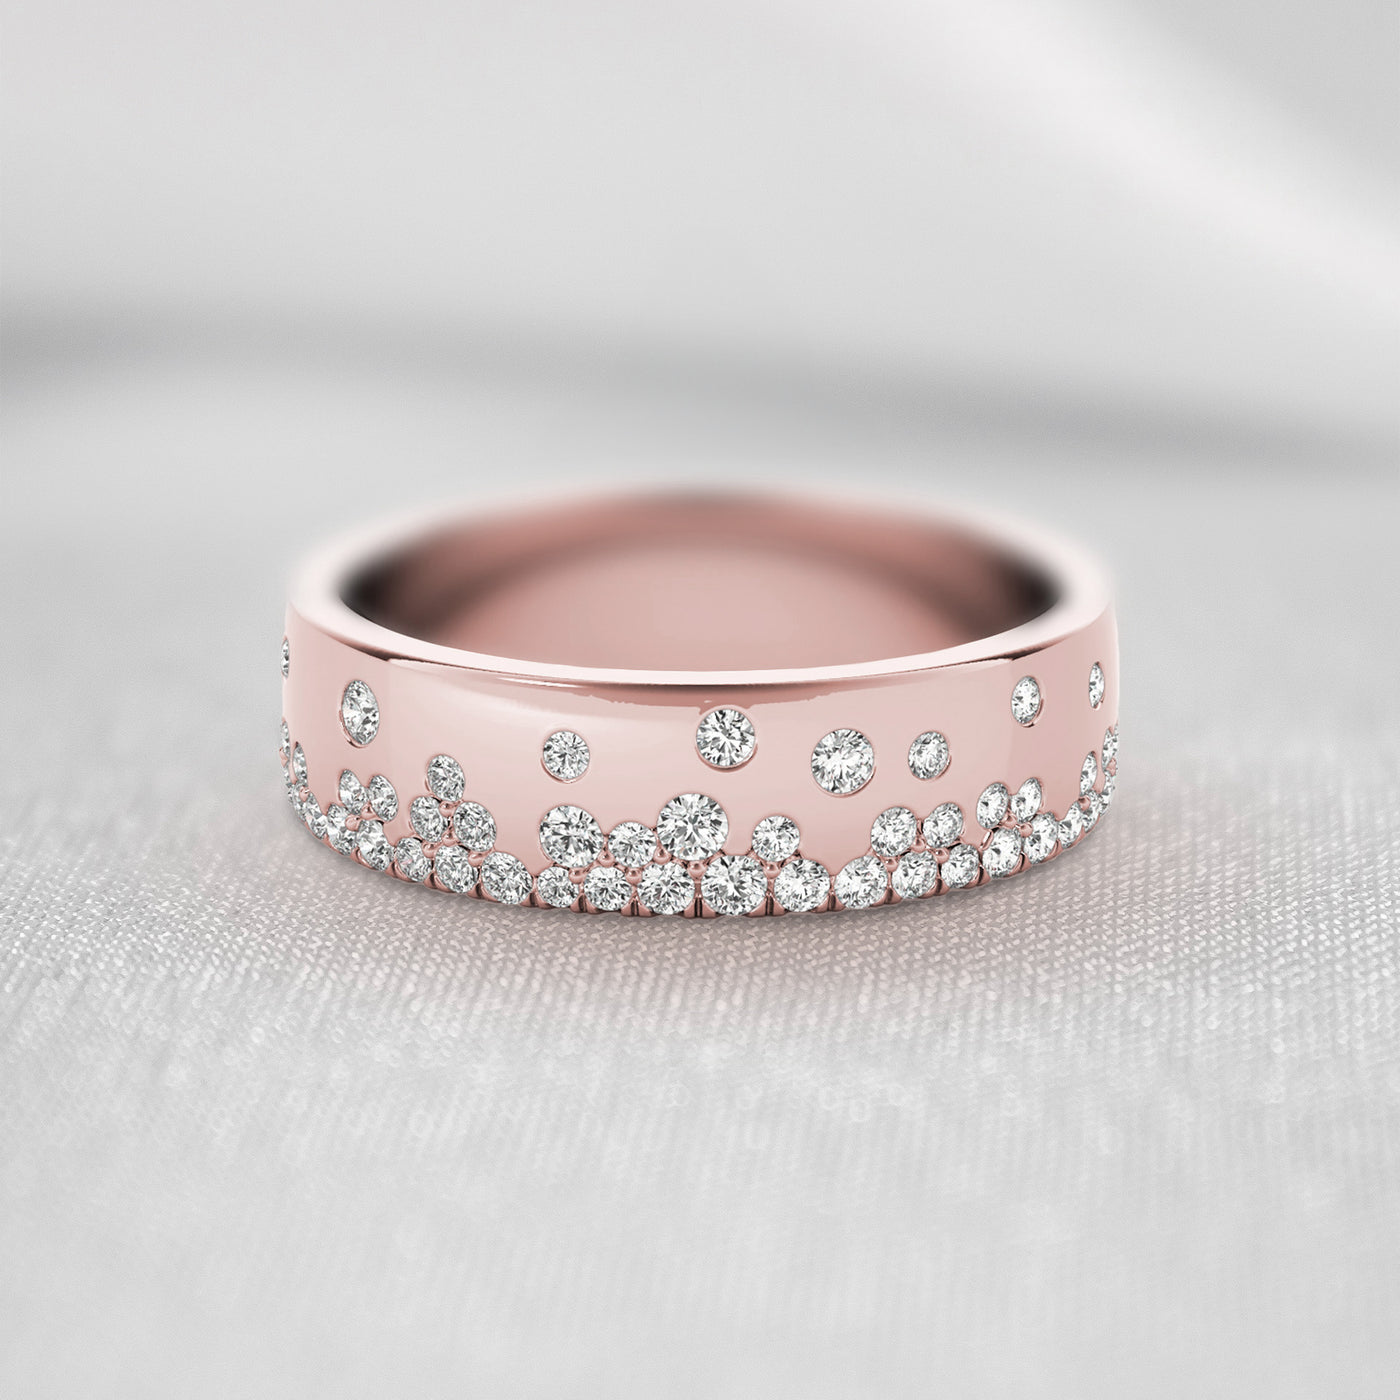 The Jordan Scatter Diamond Wedding Ring | Lisa Robin#color_18k-rose-gold